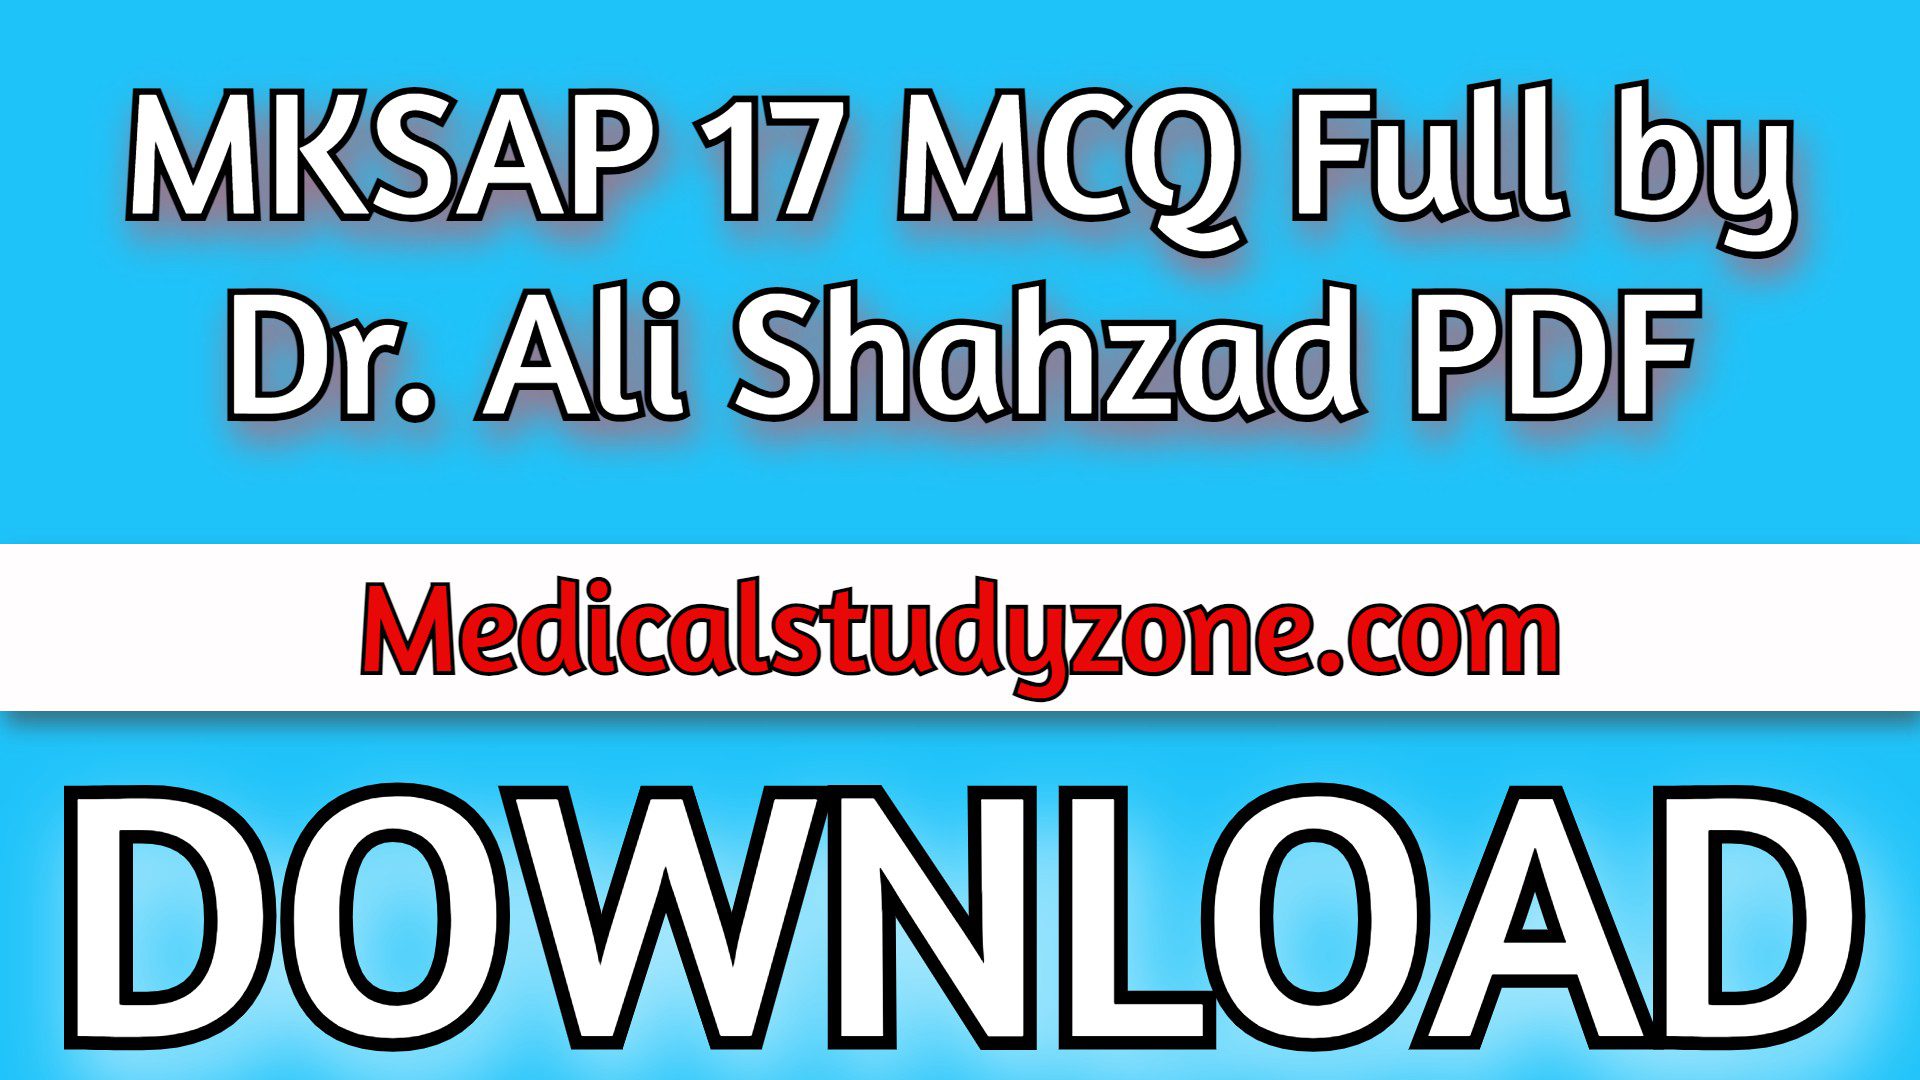 MKSAP 17 MCQ Full by Dr. Ali Shahzad PDF Free Download